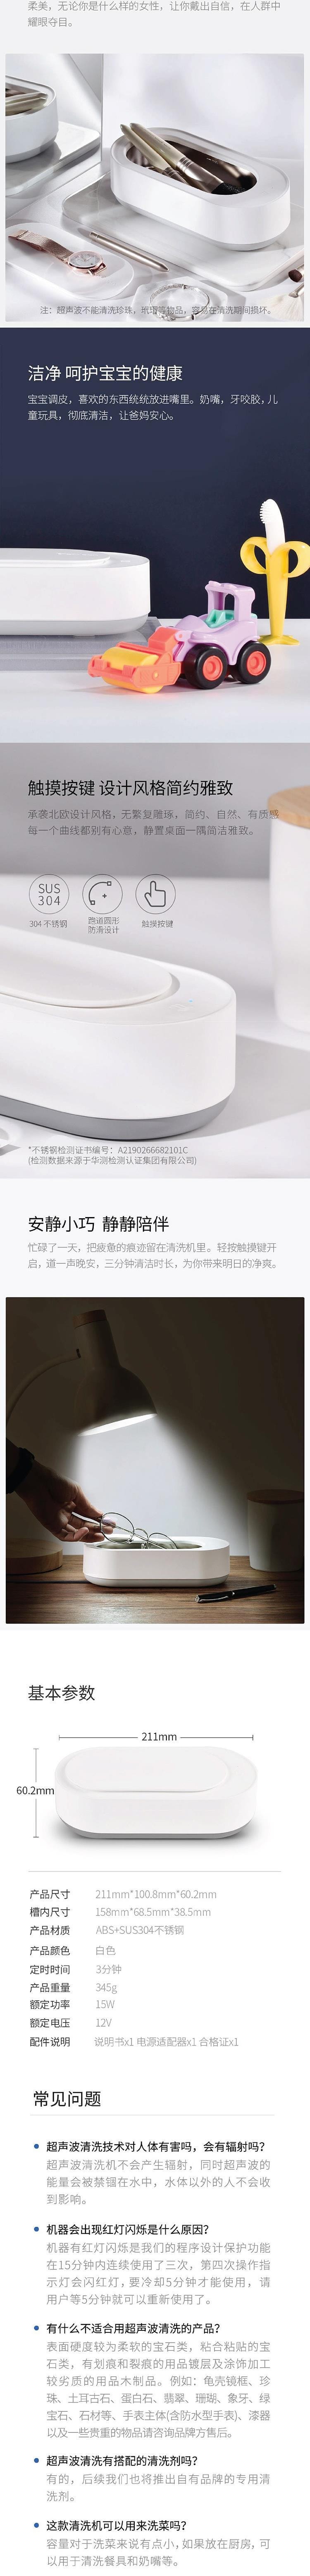 【中国直邮】 MI 生态链 EraClean-世净超声波首饰眼镜清洁机 GA-03